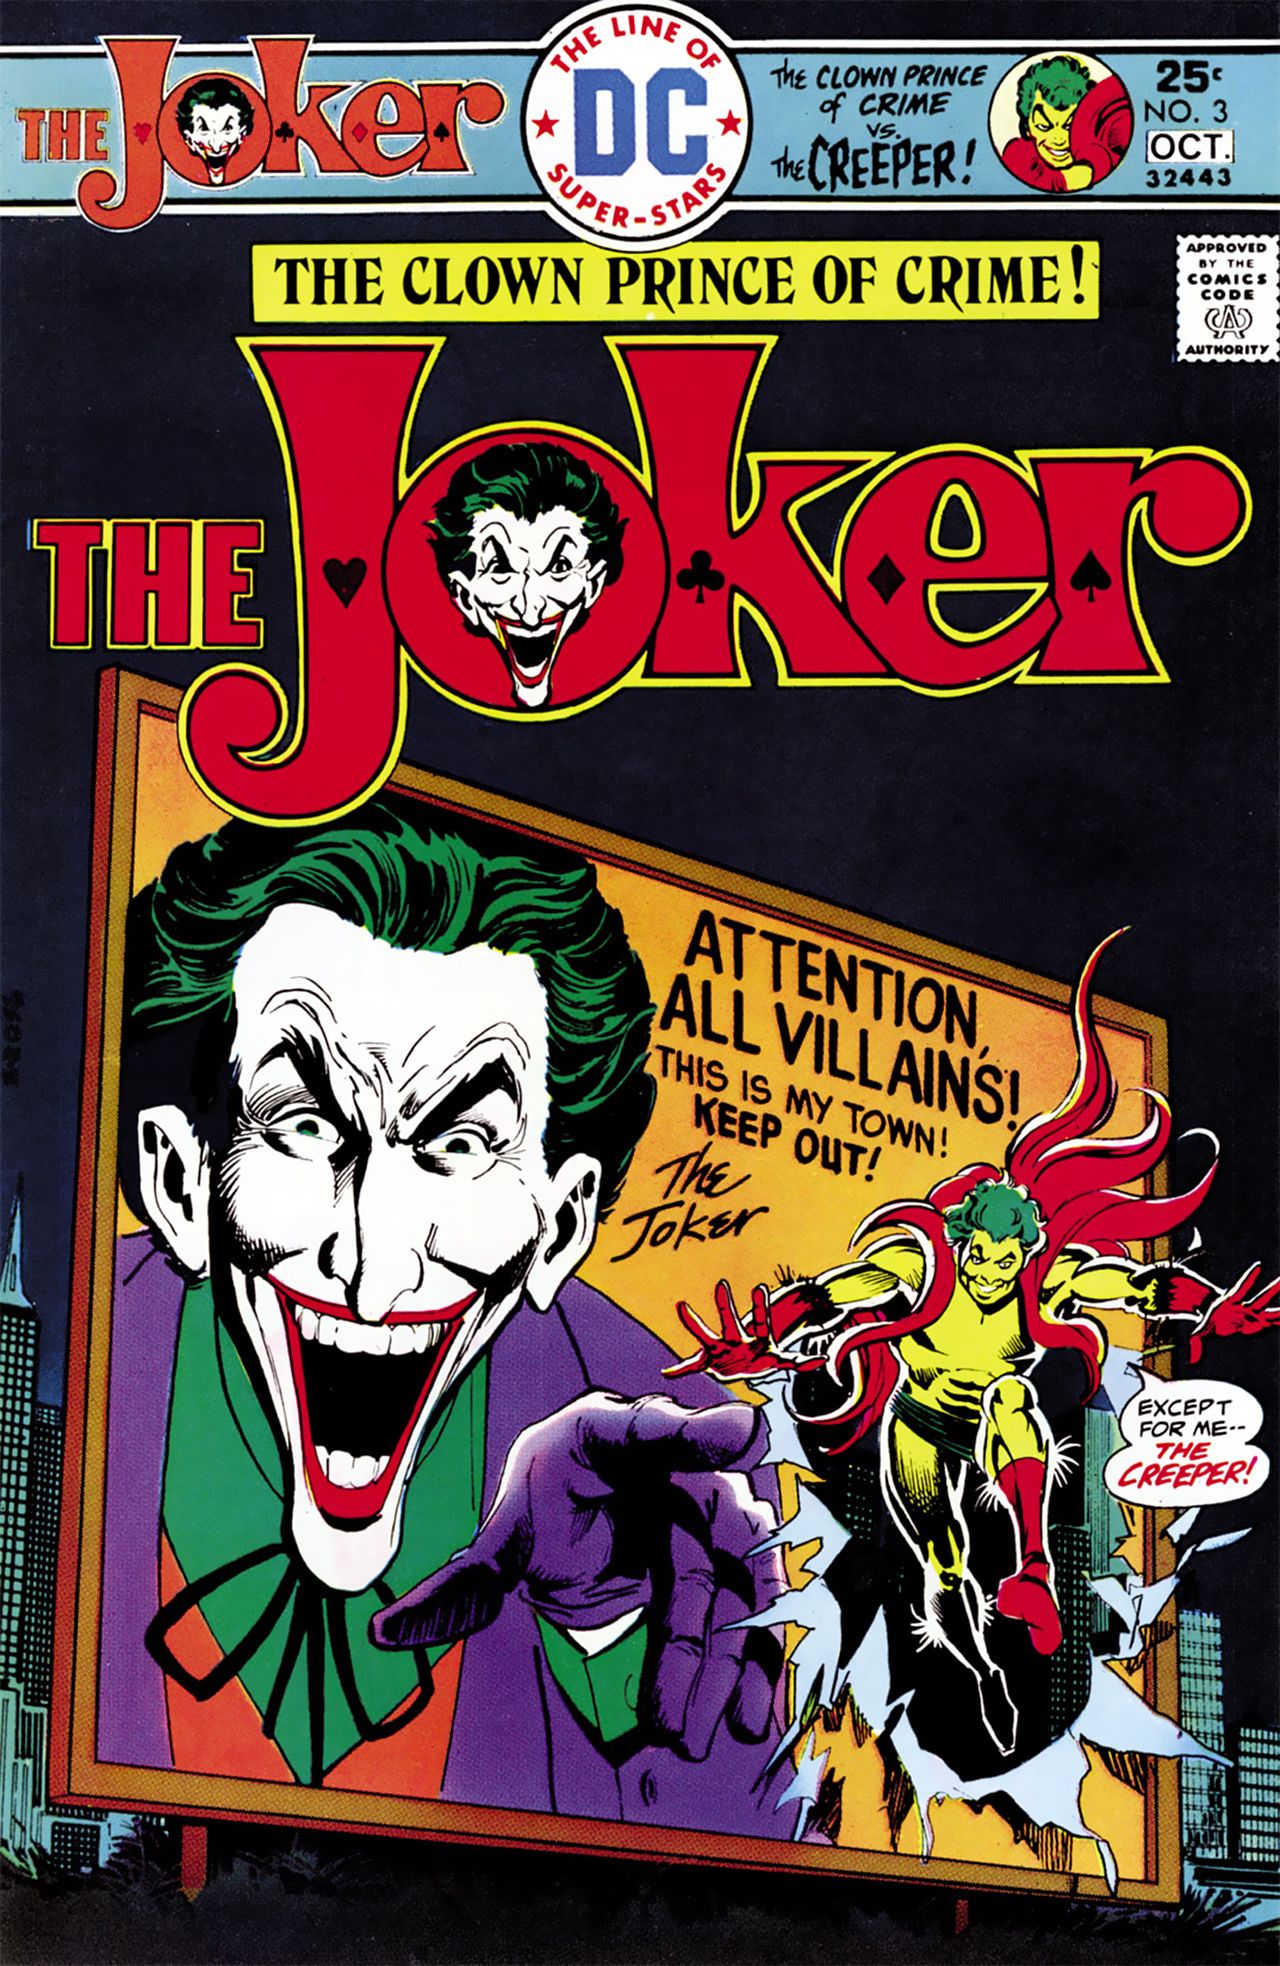 Portada del Joker #3